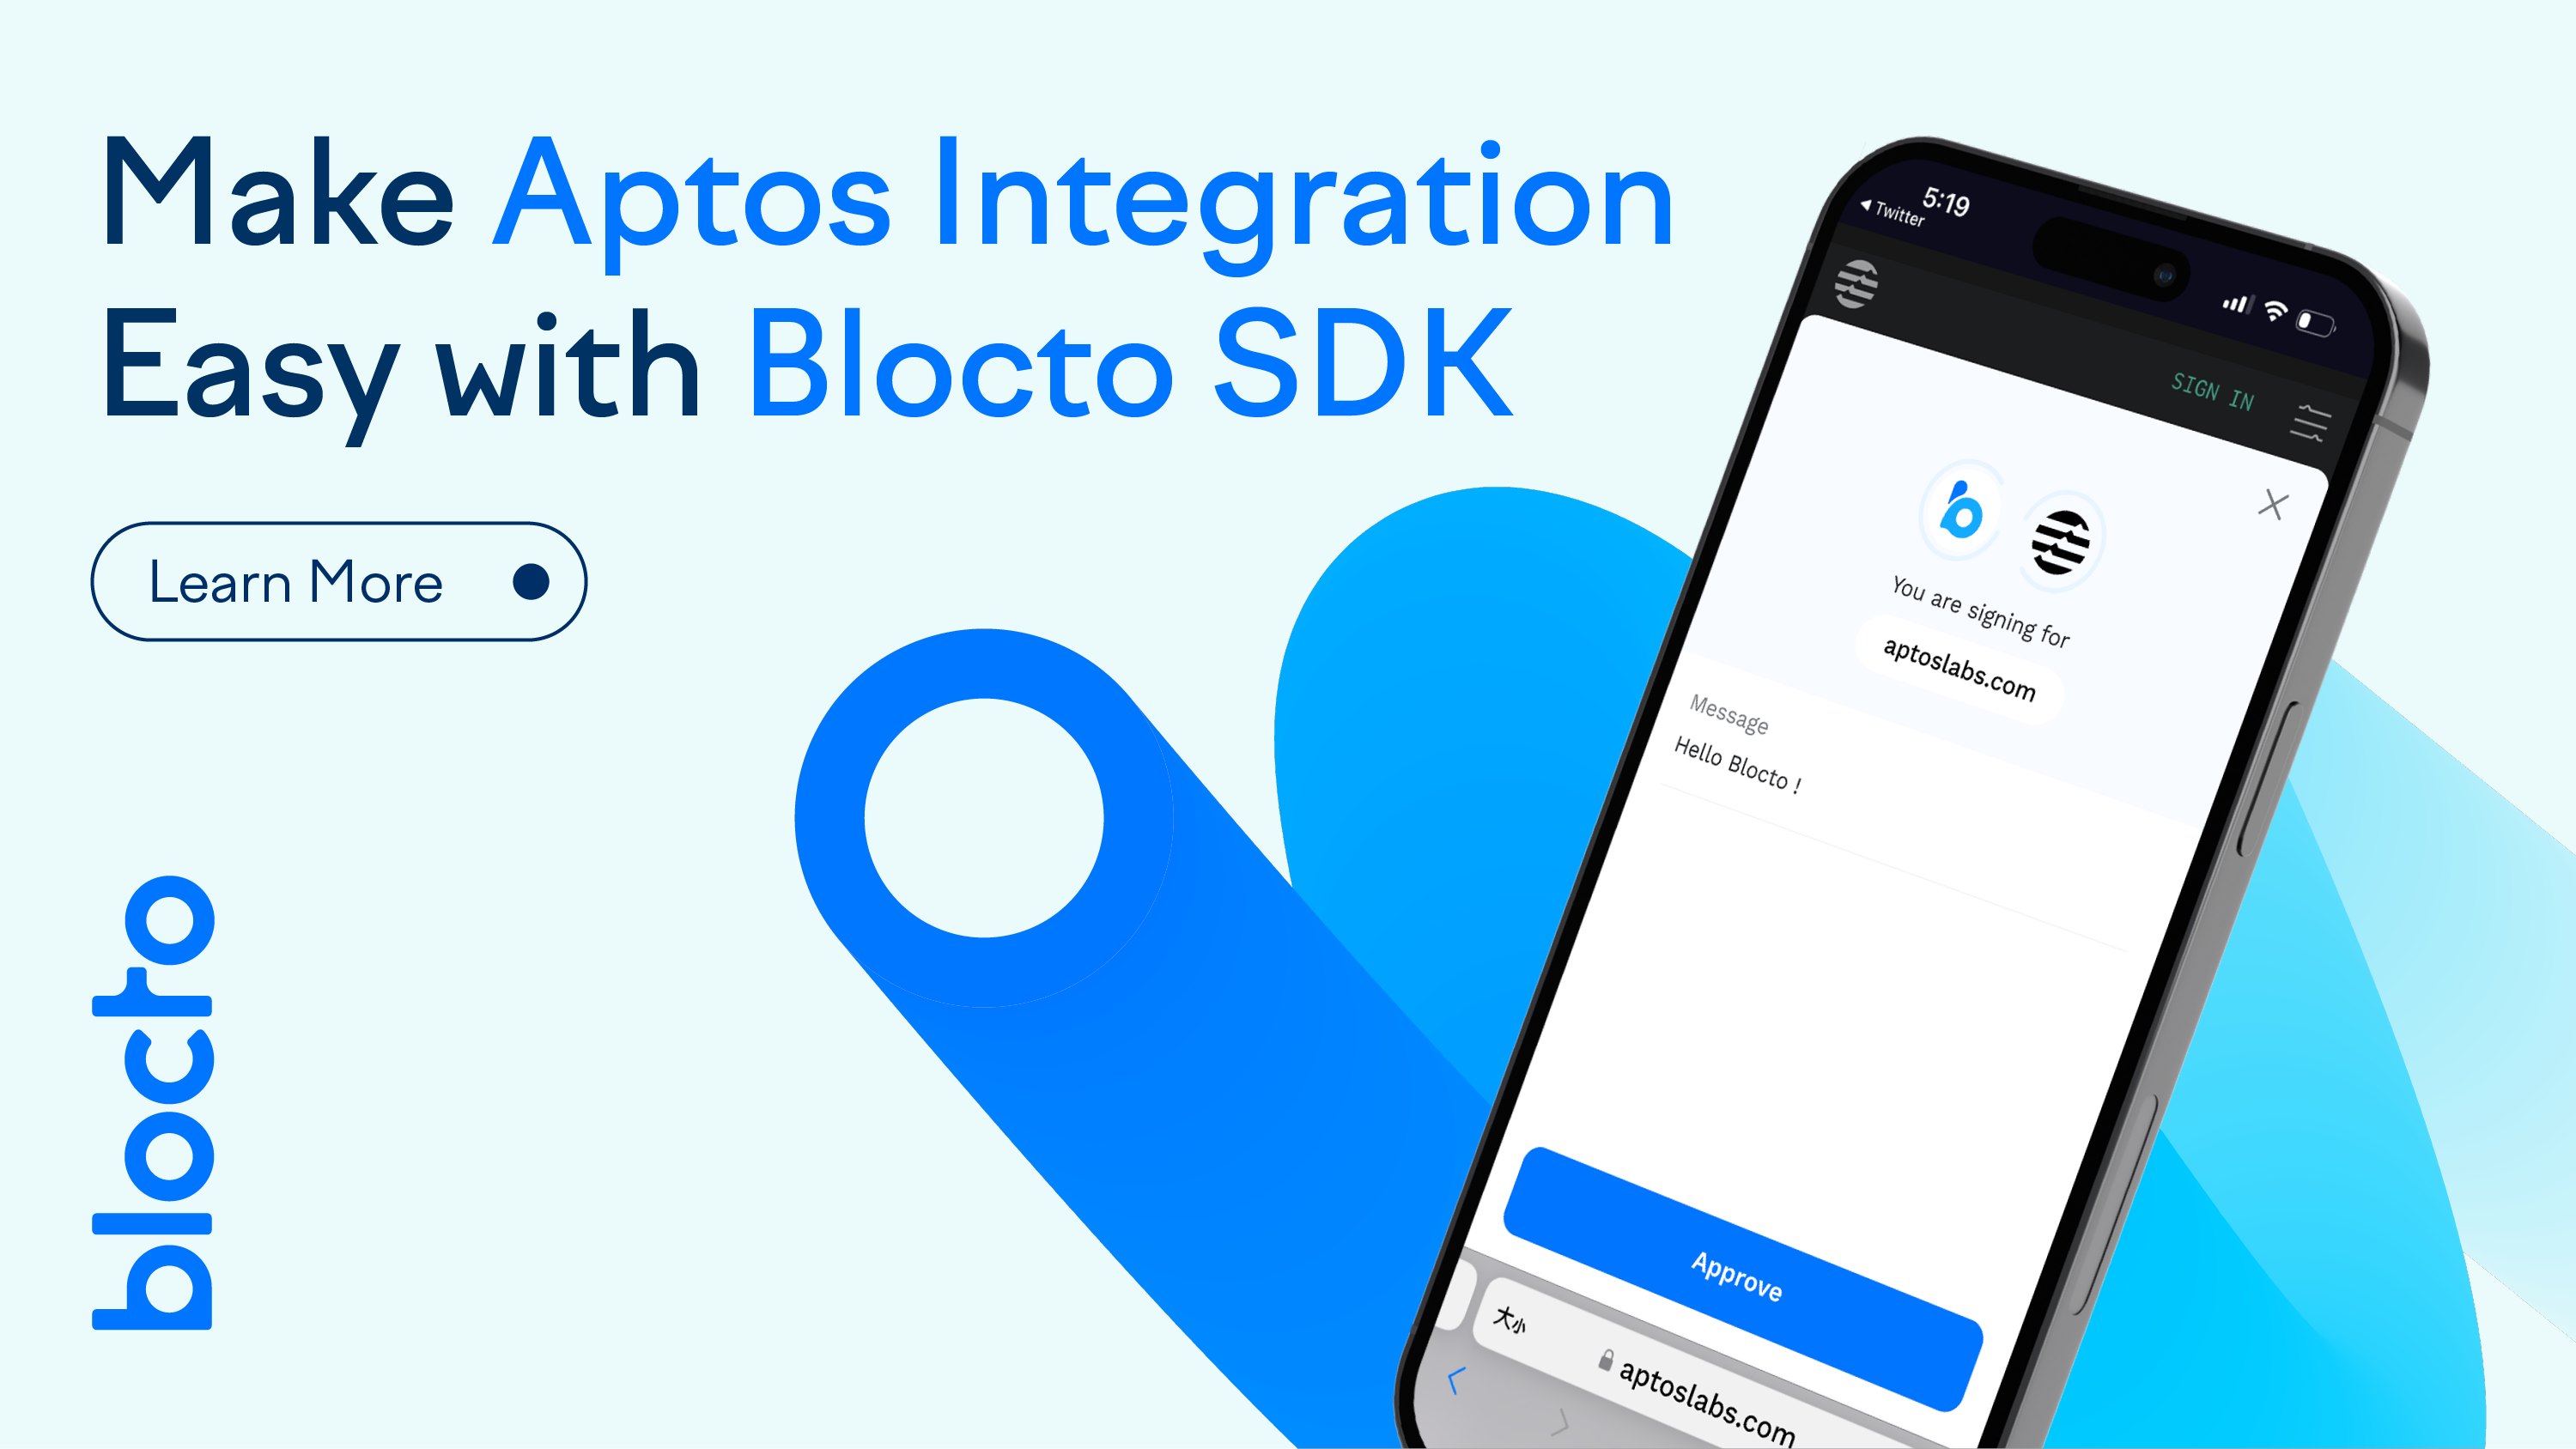 Aptos integration with Blocto SDK